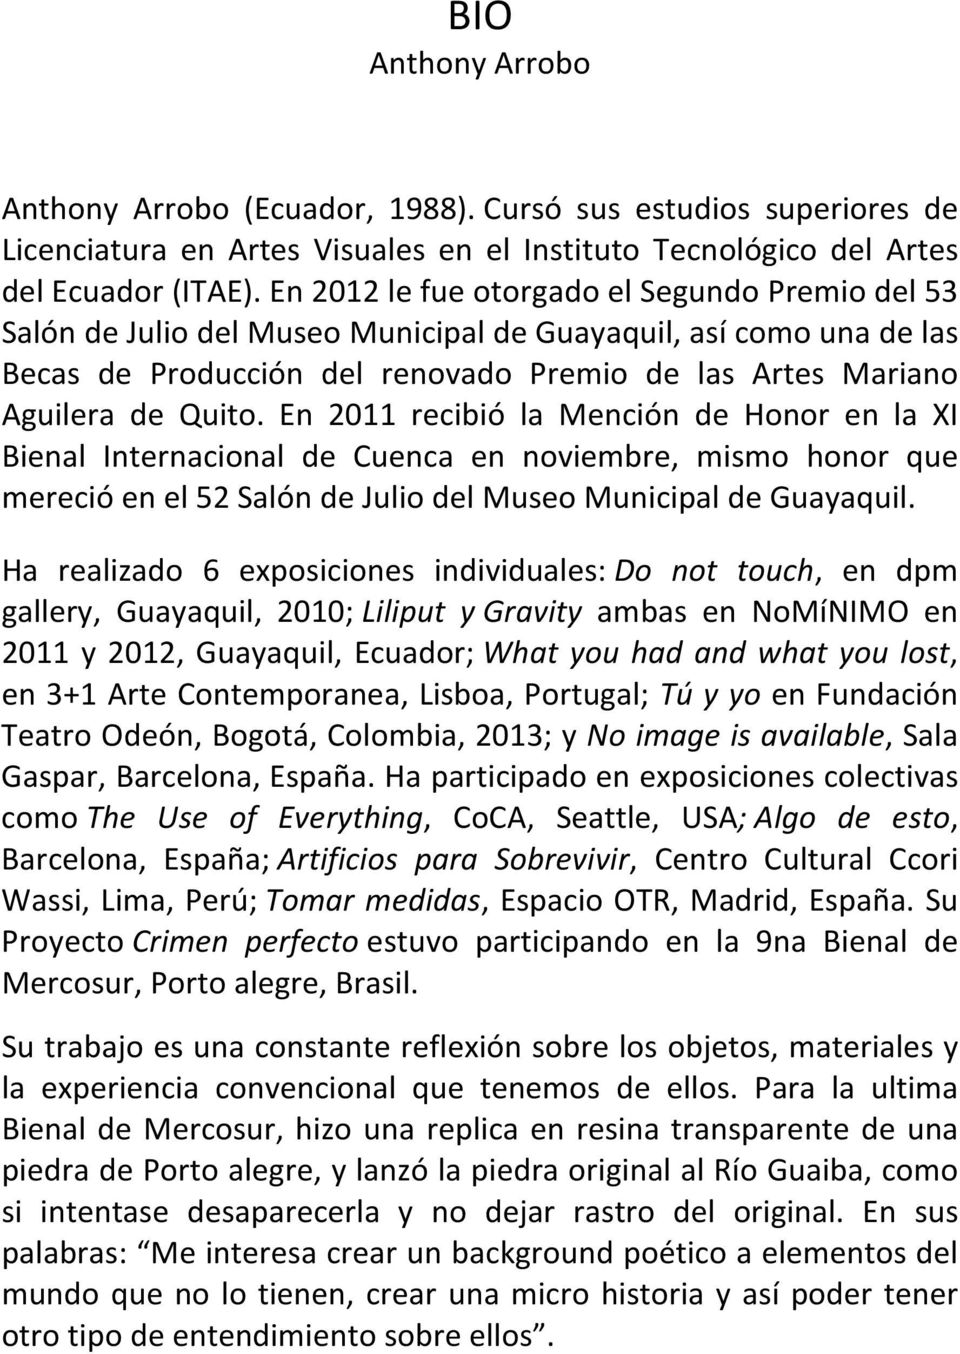 En 2011 recibió la Mención de Honor en la XI Bienal Internacional de Cuenca en noviembre, mismo honor que mereció en el 52 Salón de Julio del Museo Municipal de Guayaquil.